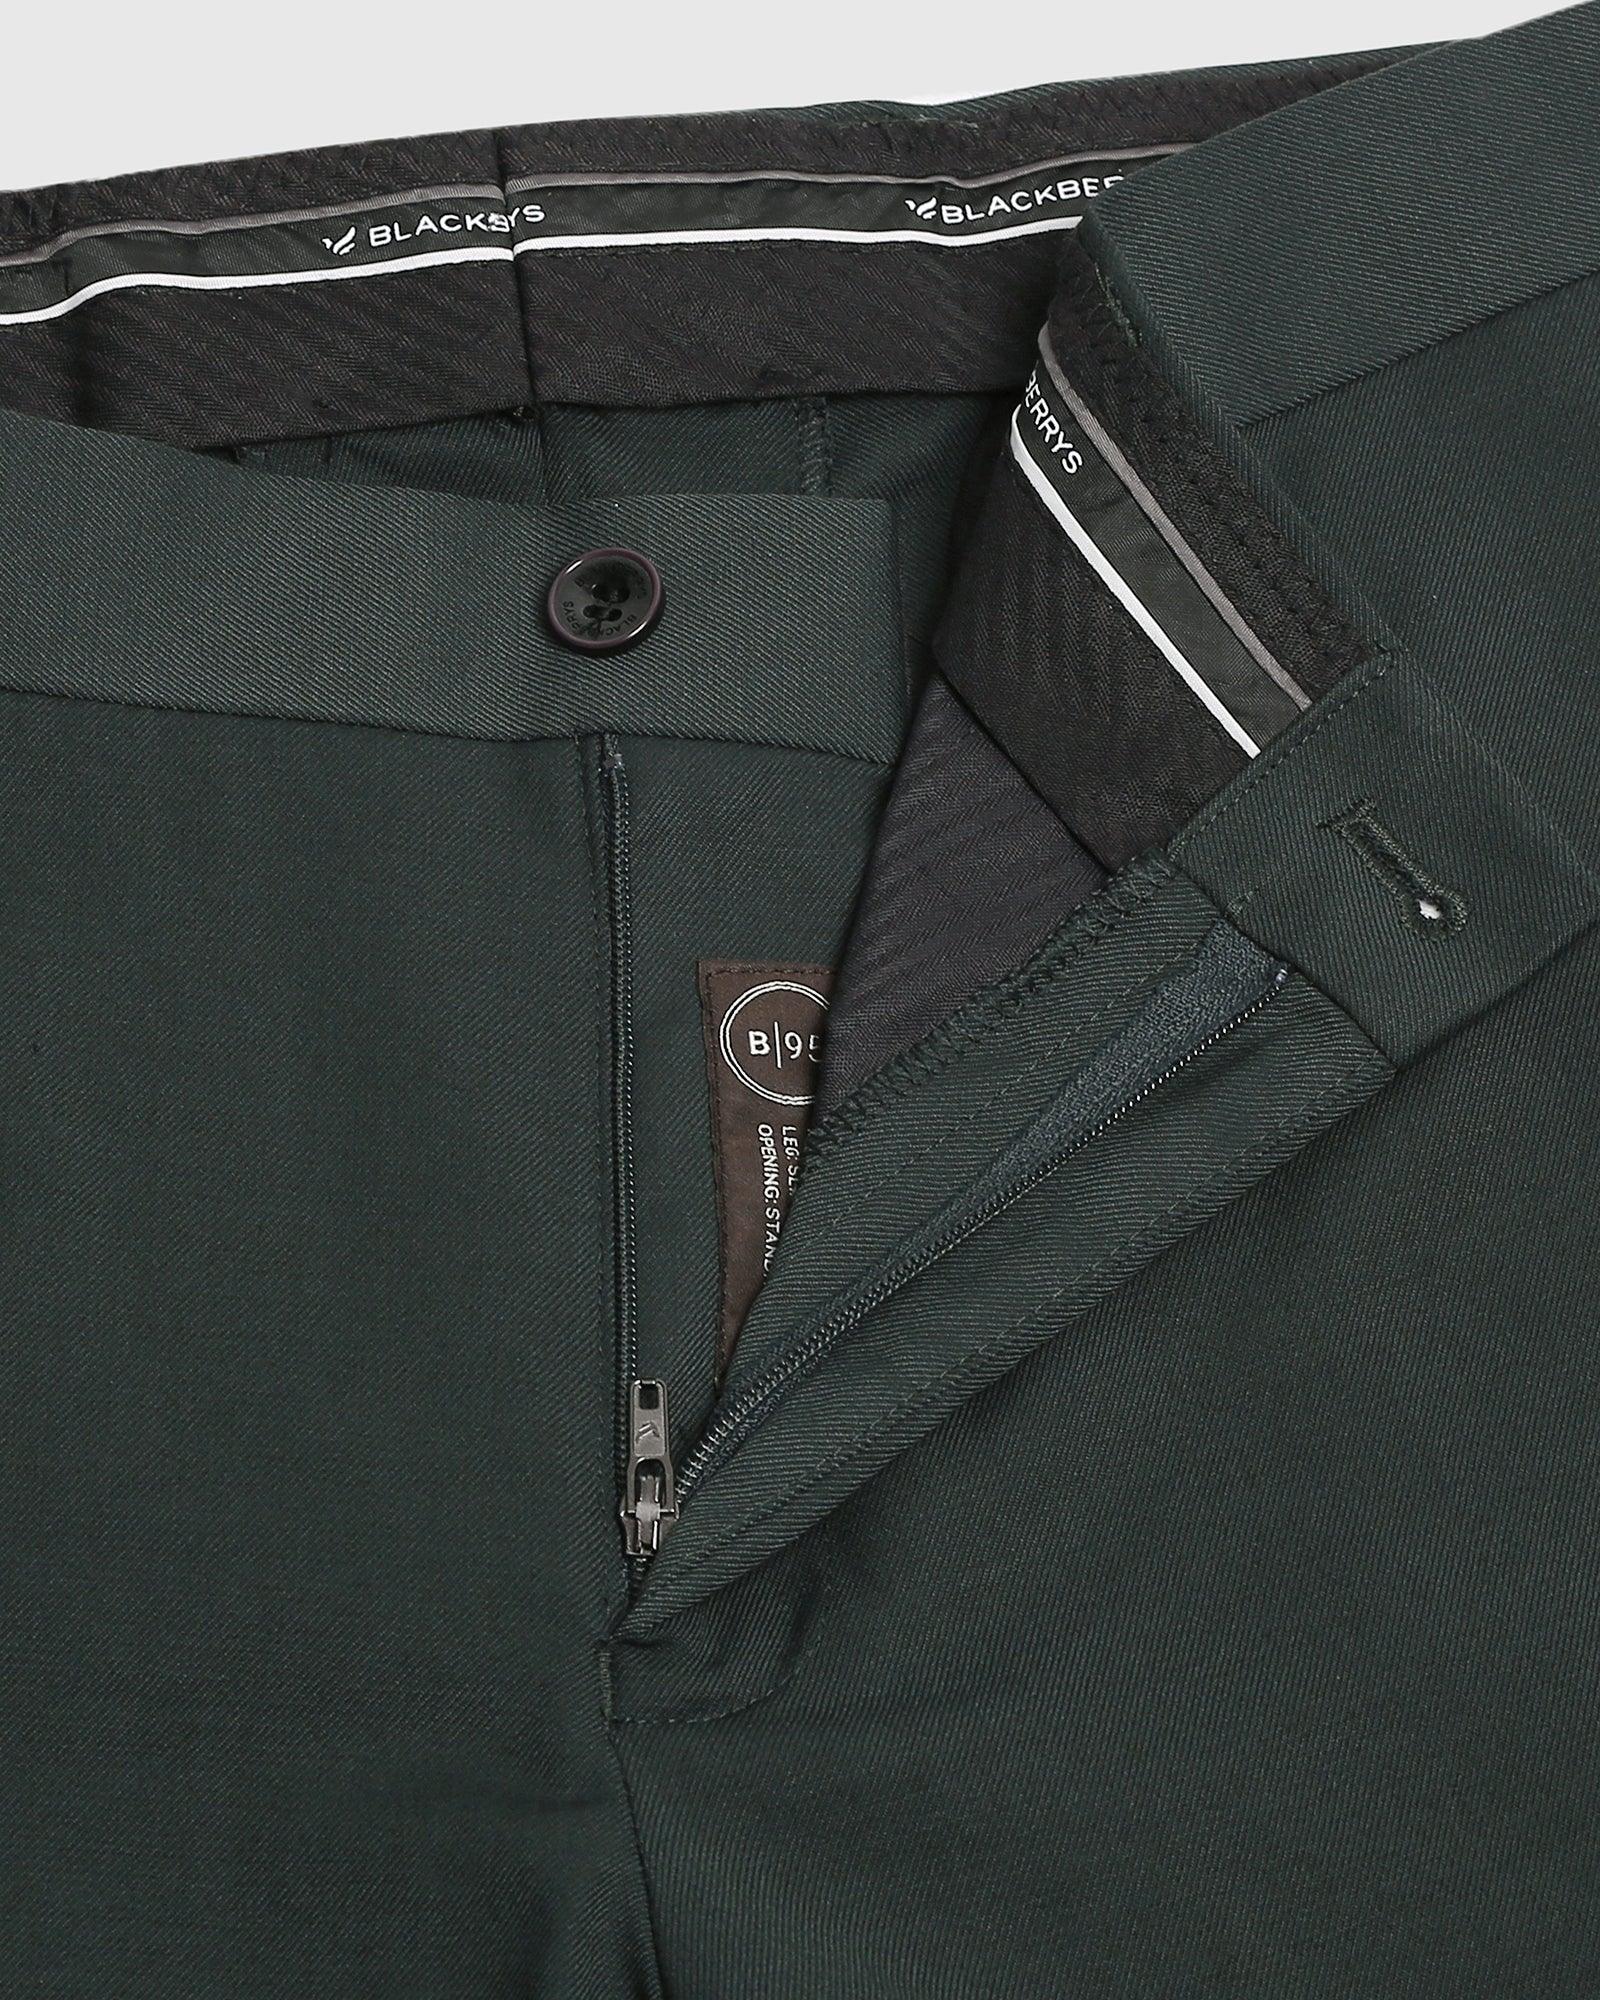 formal trousers in bottle green b 95 bedward blackberrys clothing 6